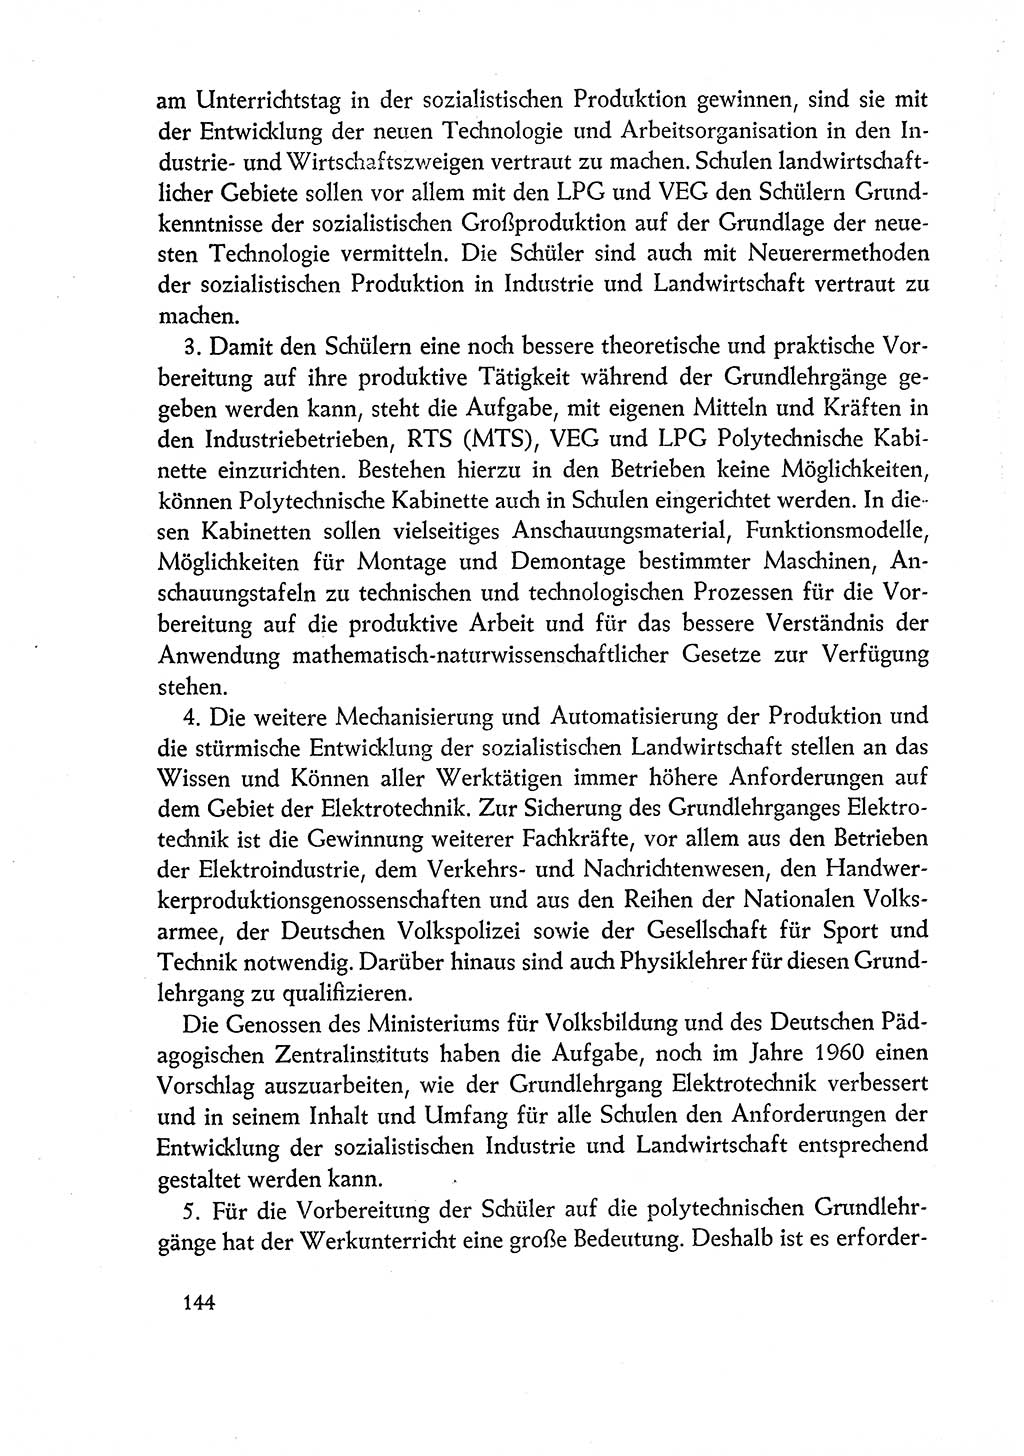 Dokumente der Sozialistischen Einheitspartei Deutschlands (SED) [Deutsche Demokratische Republik (DDR)] 1960-1961, Seite 144 (Dok. SED DDR 1960-1961, S. 144)